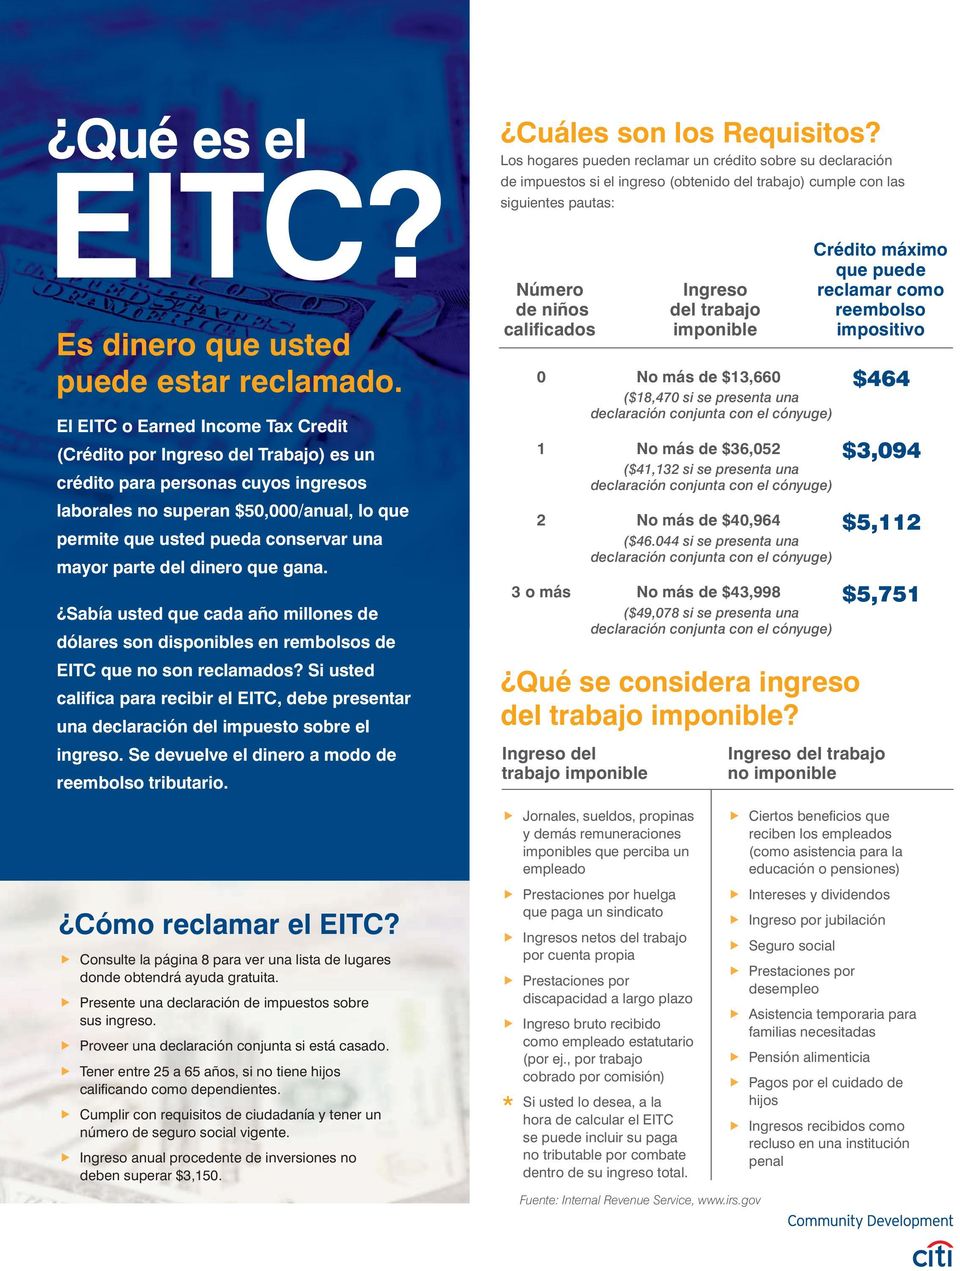 parte del dinero que gana. Sabía usted que cada año millones de dólares son disponibles en rembolsos de EITC que no son reclamados?